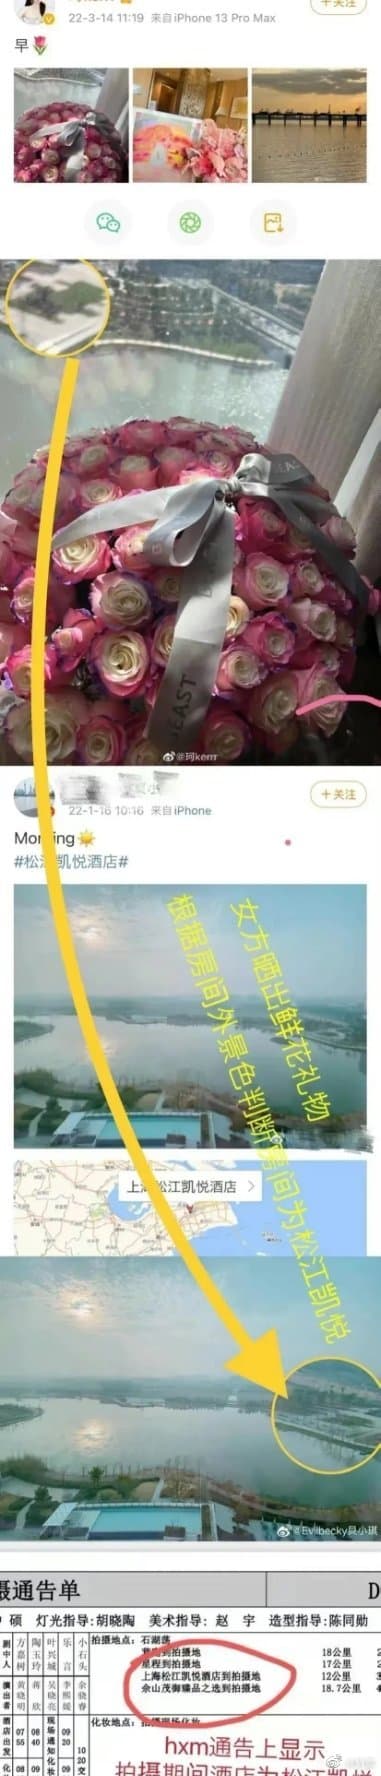 Diệp Kha đăng ảnh nhận hoa trên Weibo, vị trí hiển thị là thành phố nơi Huỳnh Hiểu Minh quay phim